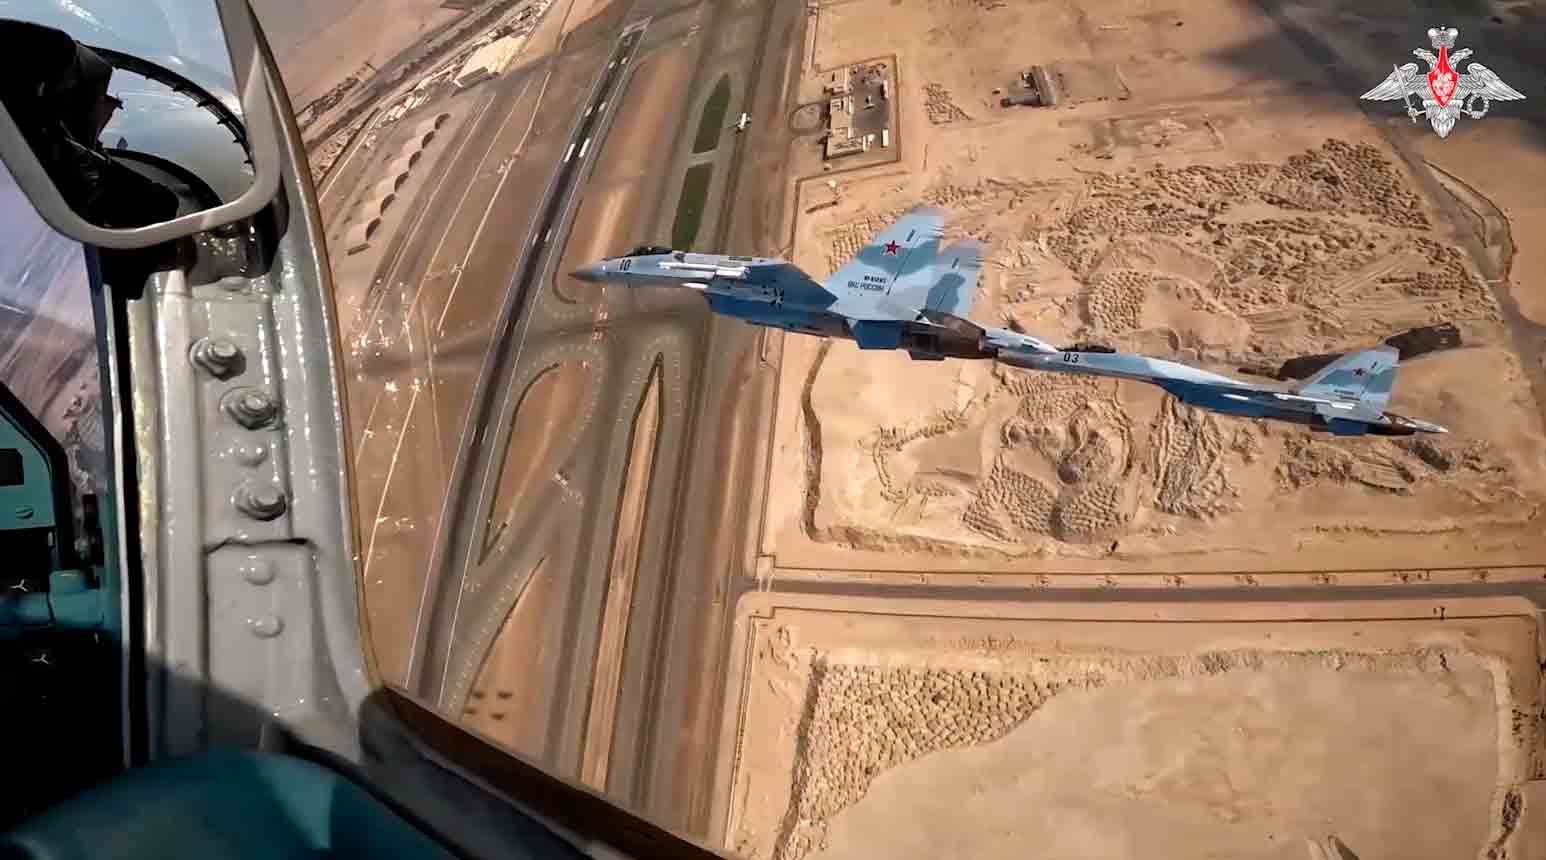 वीडियो में पुतिन के प्रेसीडेंशियल विमान के Su-35S युद्ध-विमानों द्वारा रक्षा कार्य दिखाया गया है। फोटो और वीडियो: टेलीग्राम टी.मी/मॉड_रशिया